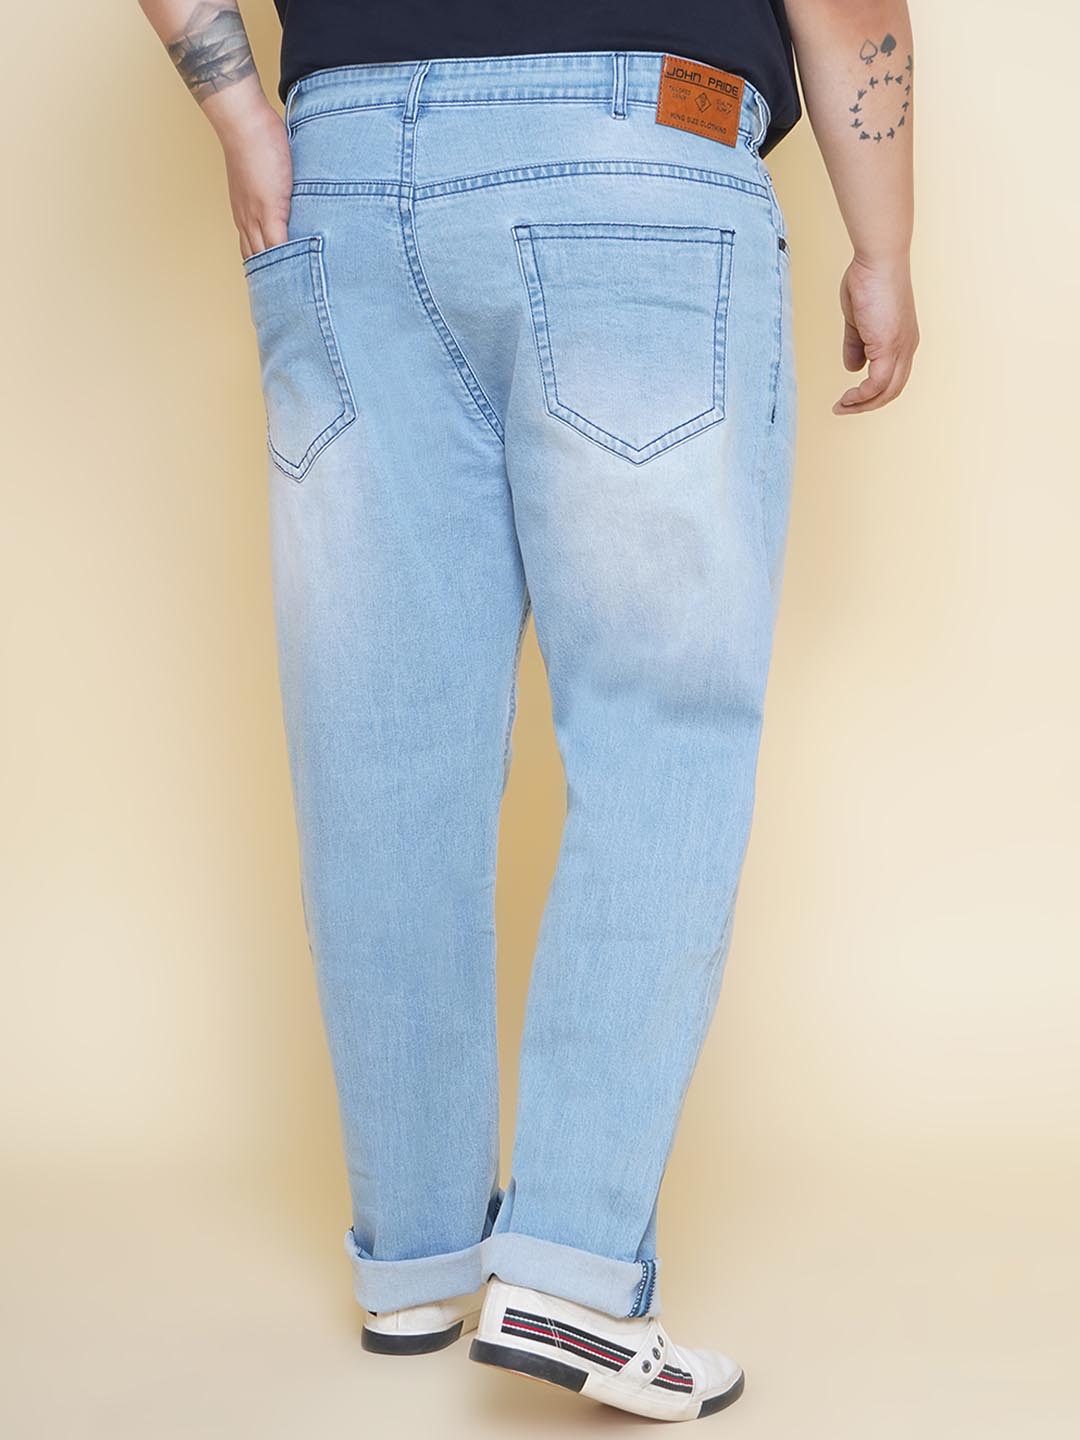 bottomwear/jeans/JPJ12361/jpj12361-5.jpg